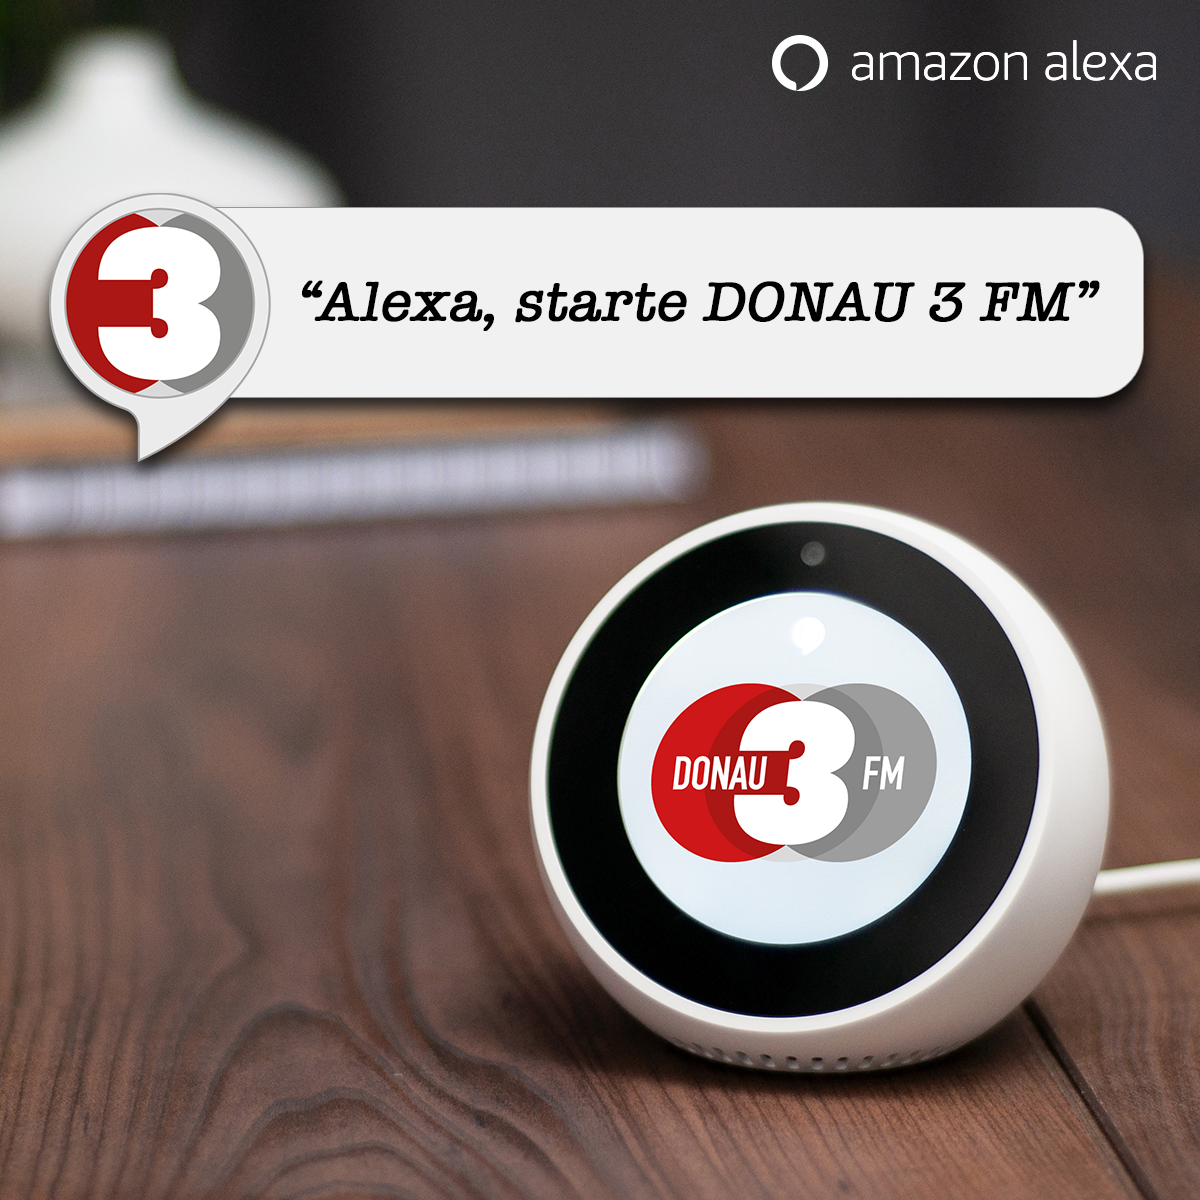 Der DONAU 3 FM Alexa Skill